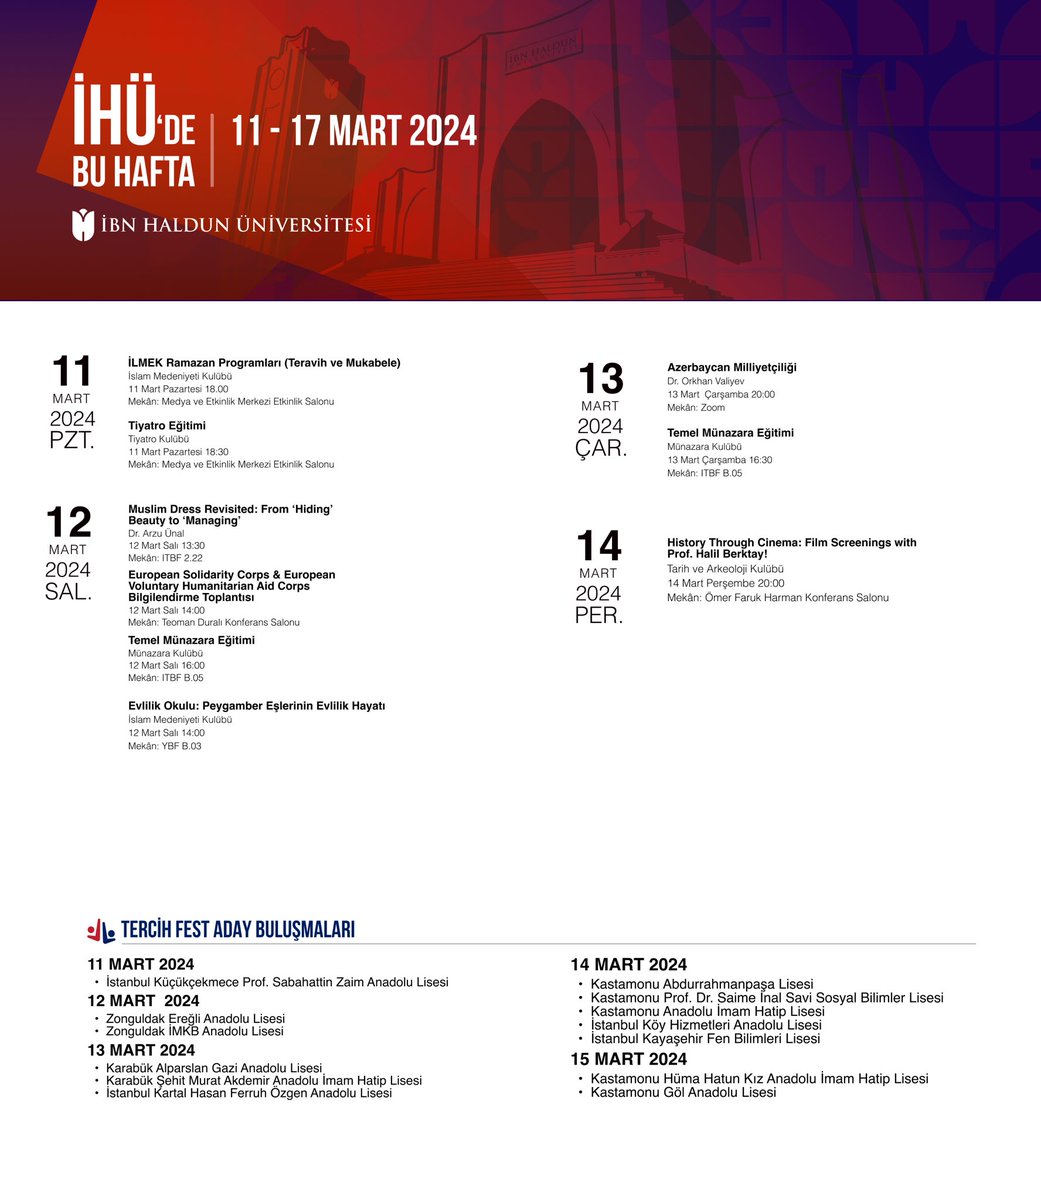 İHÜ’de Bu Hafta 11-17 Mart 2024
#ibnhaldunüniversitesi